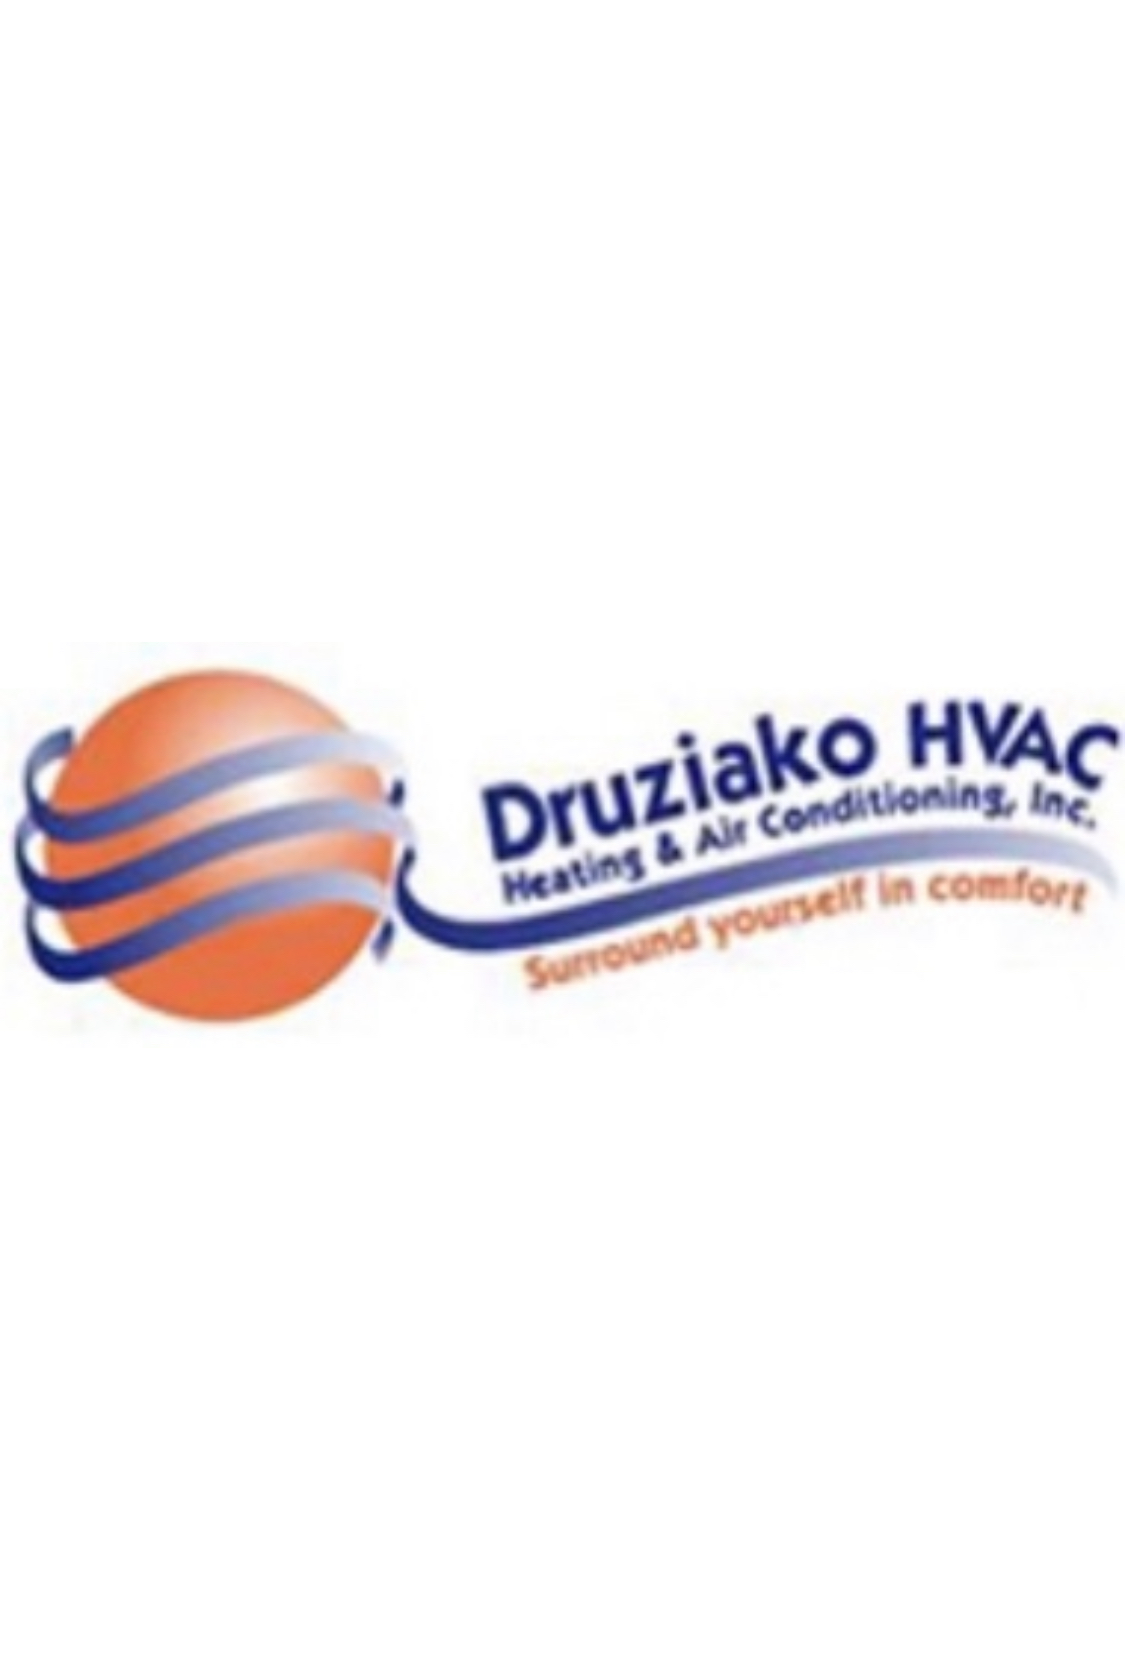 Druziako HVAC Inc.